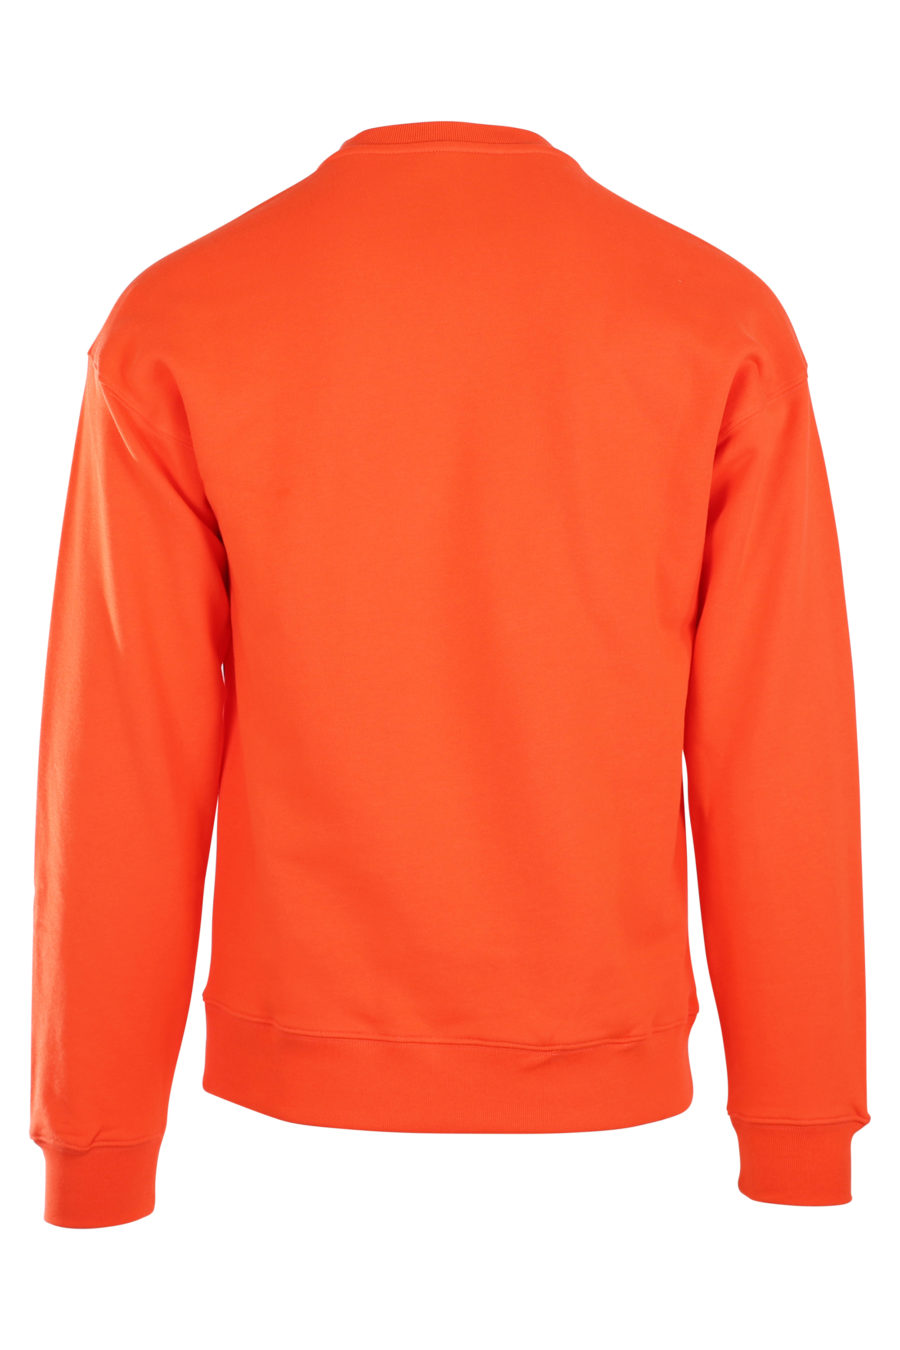 Orange sweatshirt with large "fantasy" logo - IMG 9945